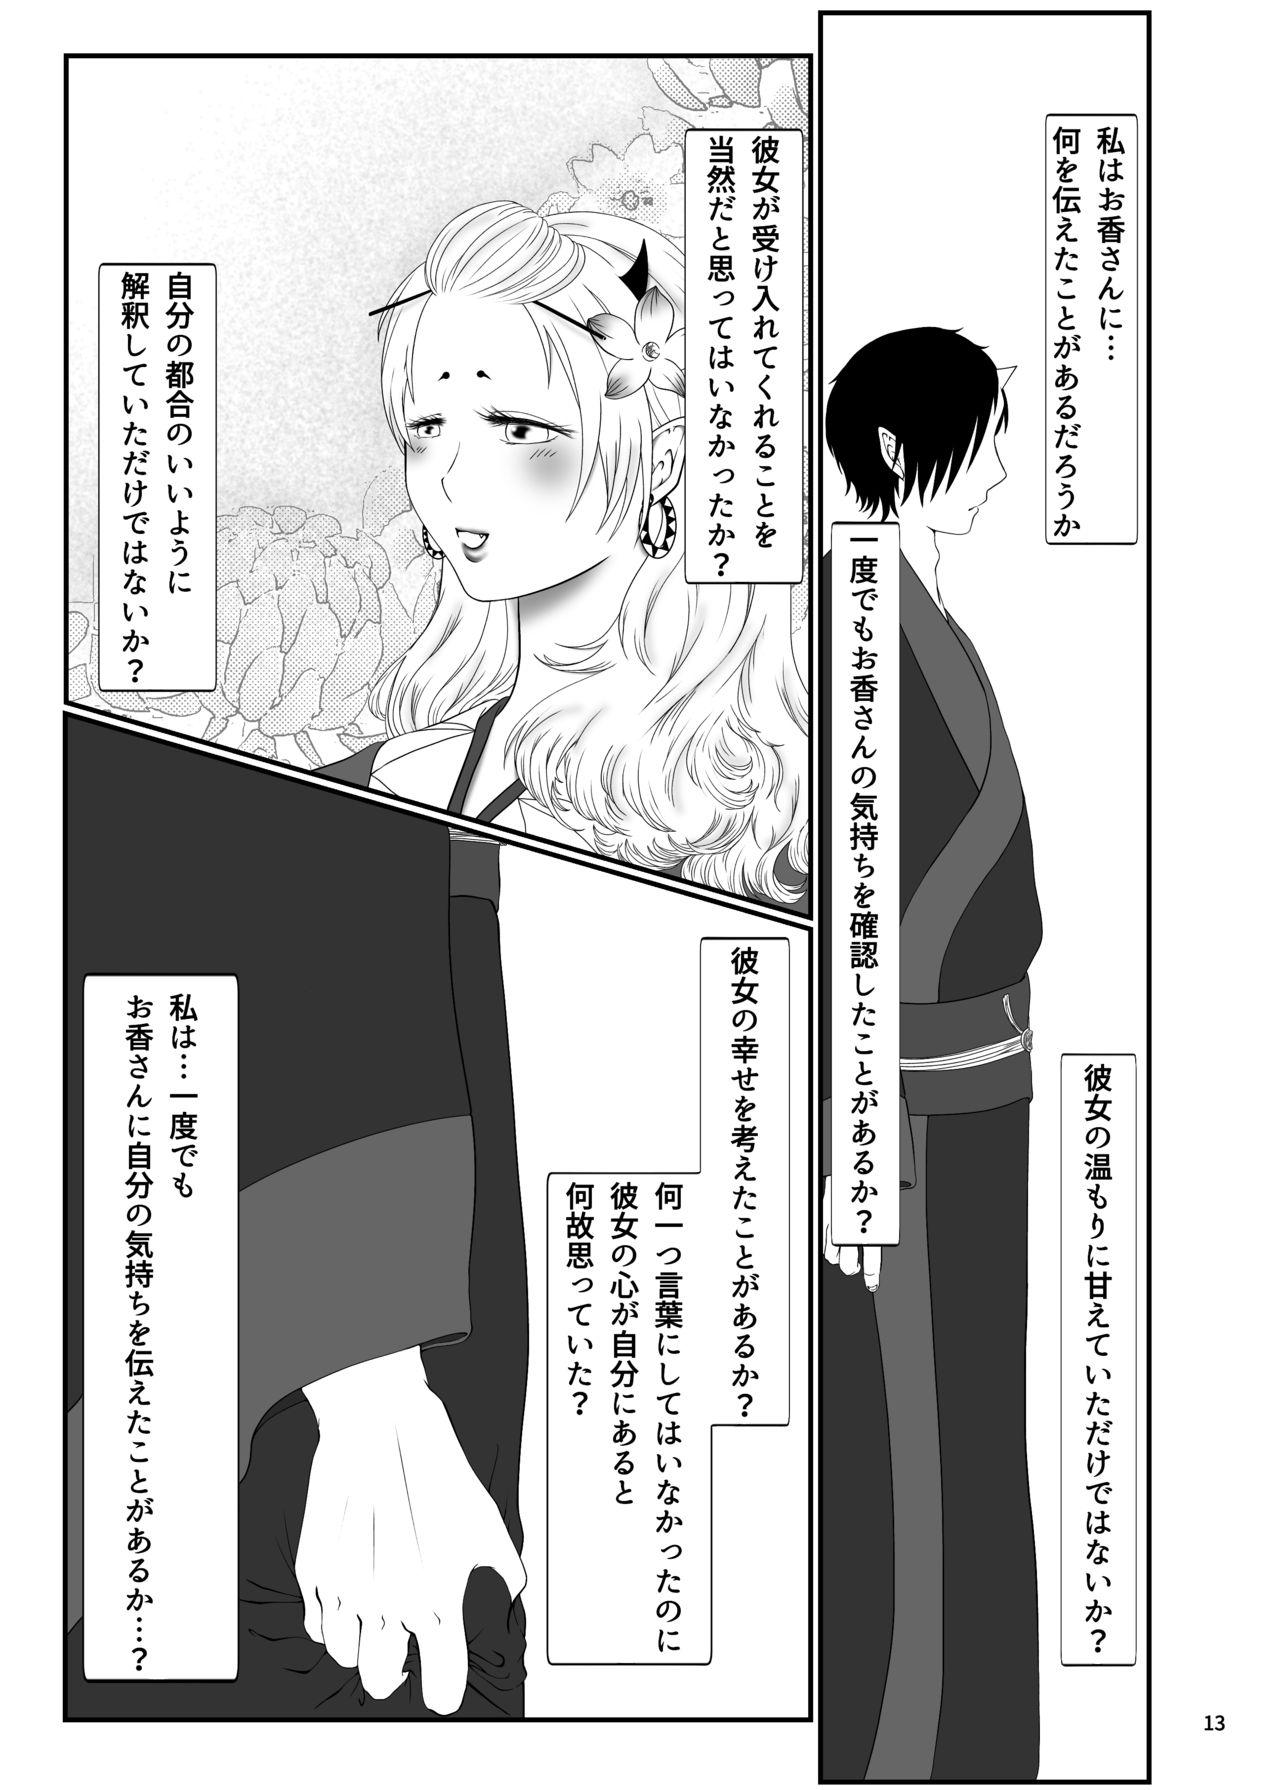 This Touni Anata no Mono - Hoozuki no reitetsu Lesbo - Page 12